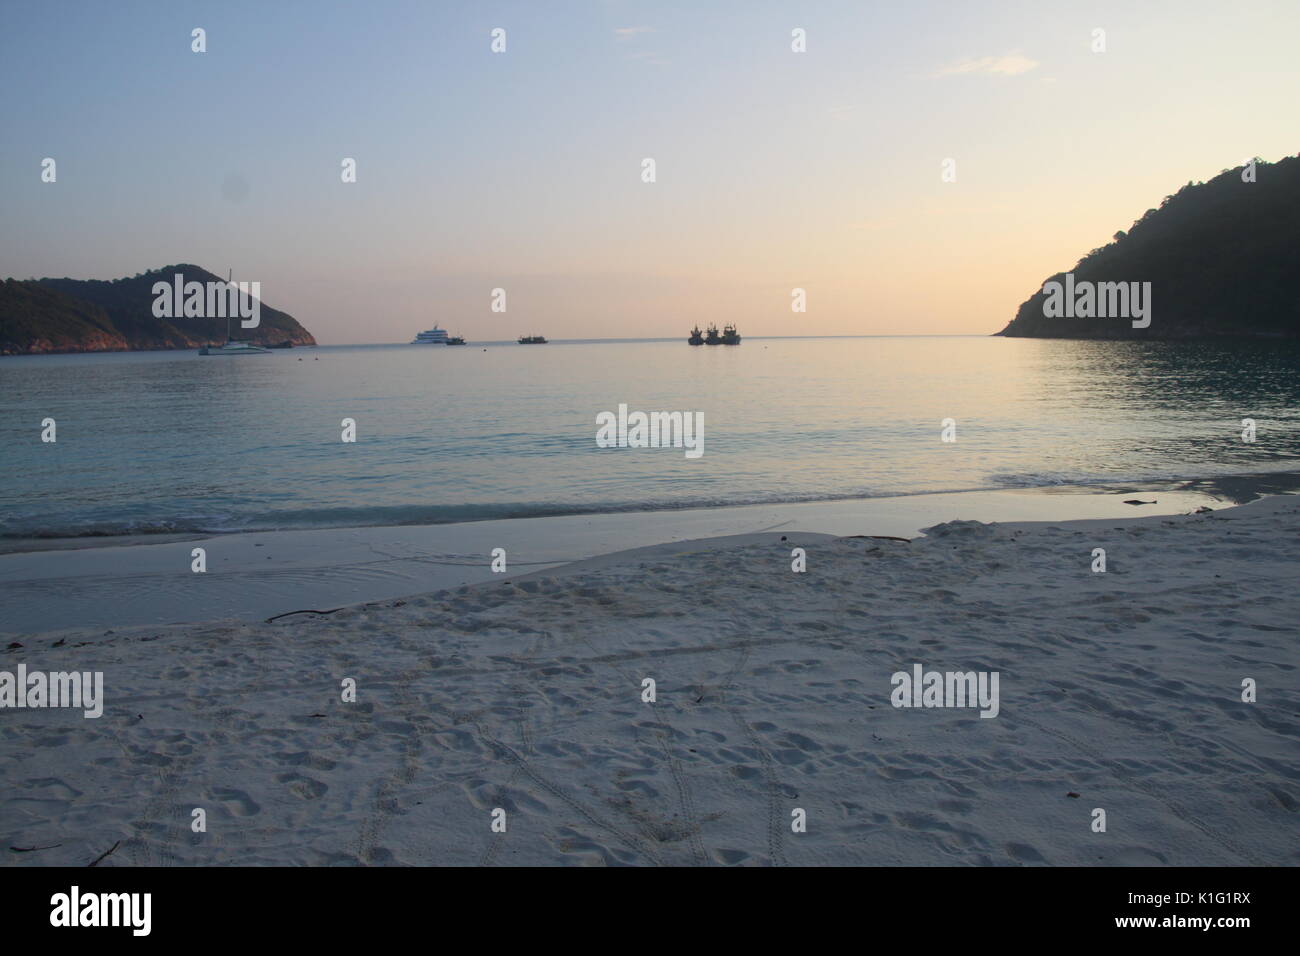 Teluk Dalam, beautiful island of Pulau Redang, Malaysia Stock Photo